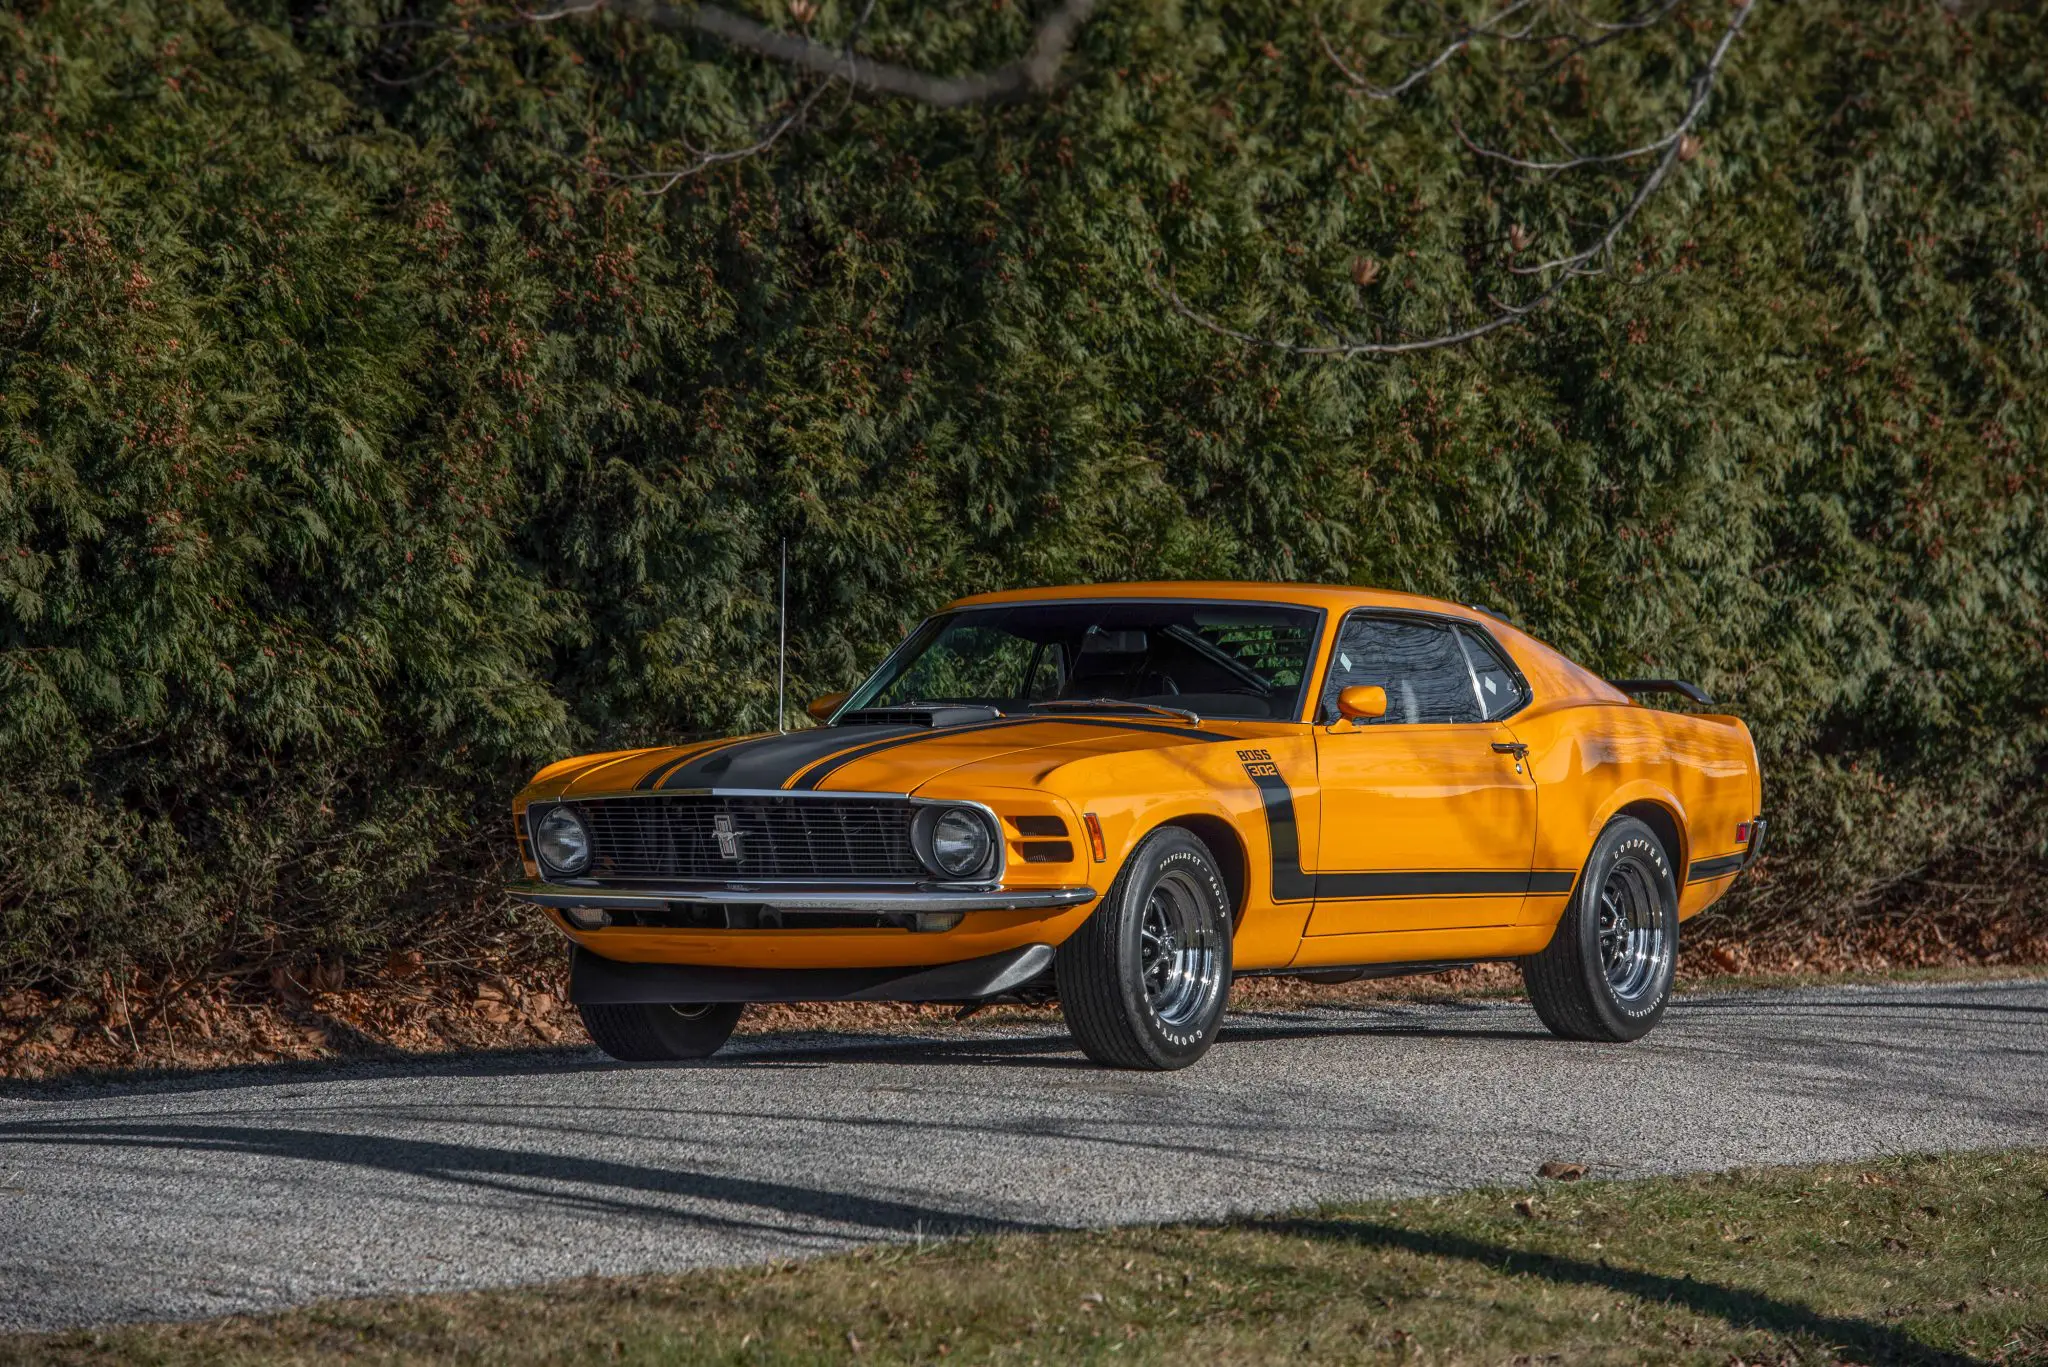 1970 Ford Mustang Boss 302 Finished in Grabber Orange over black vinyl upholstery